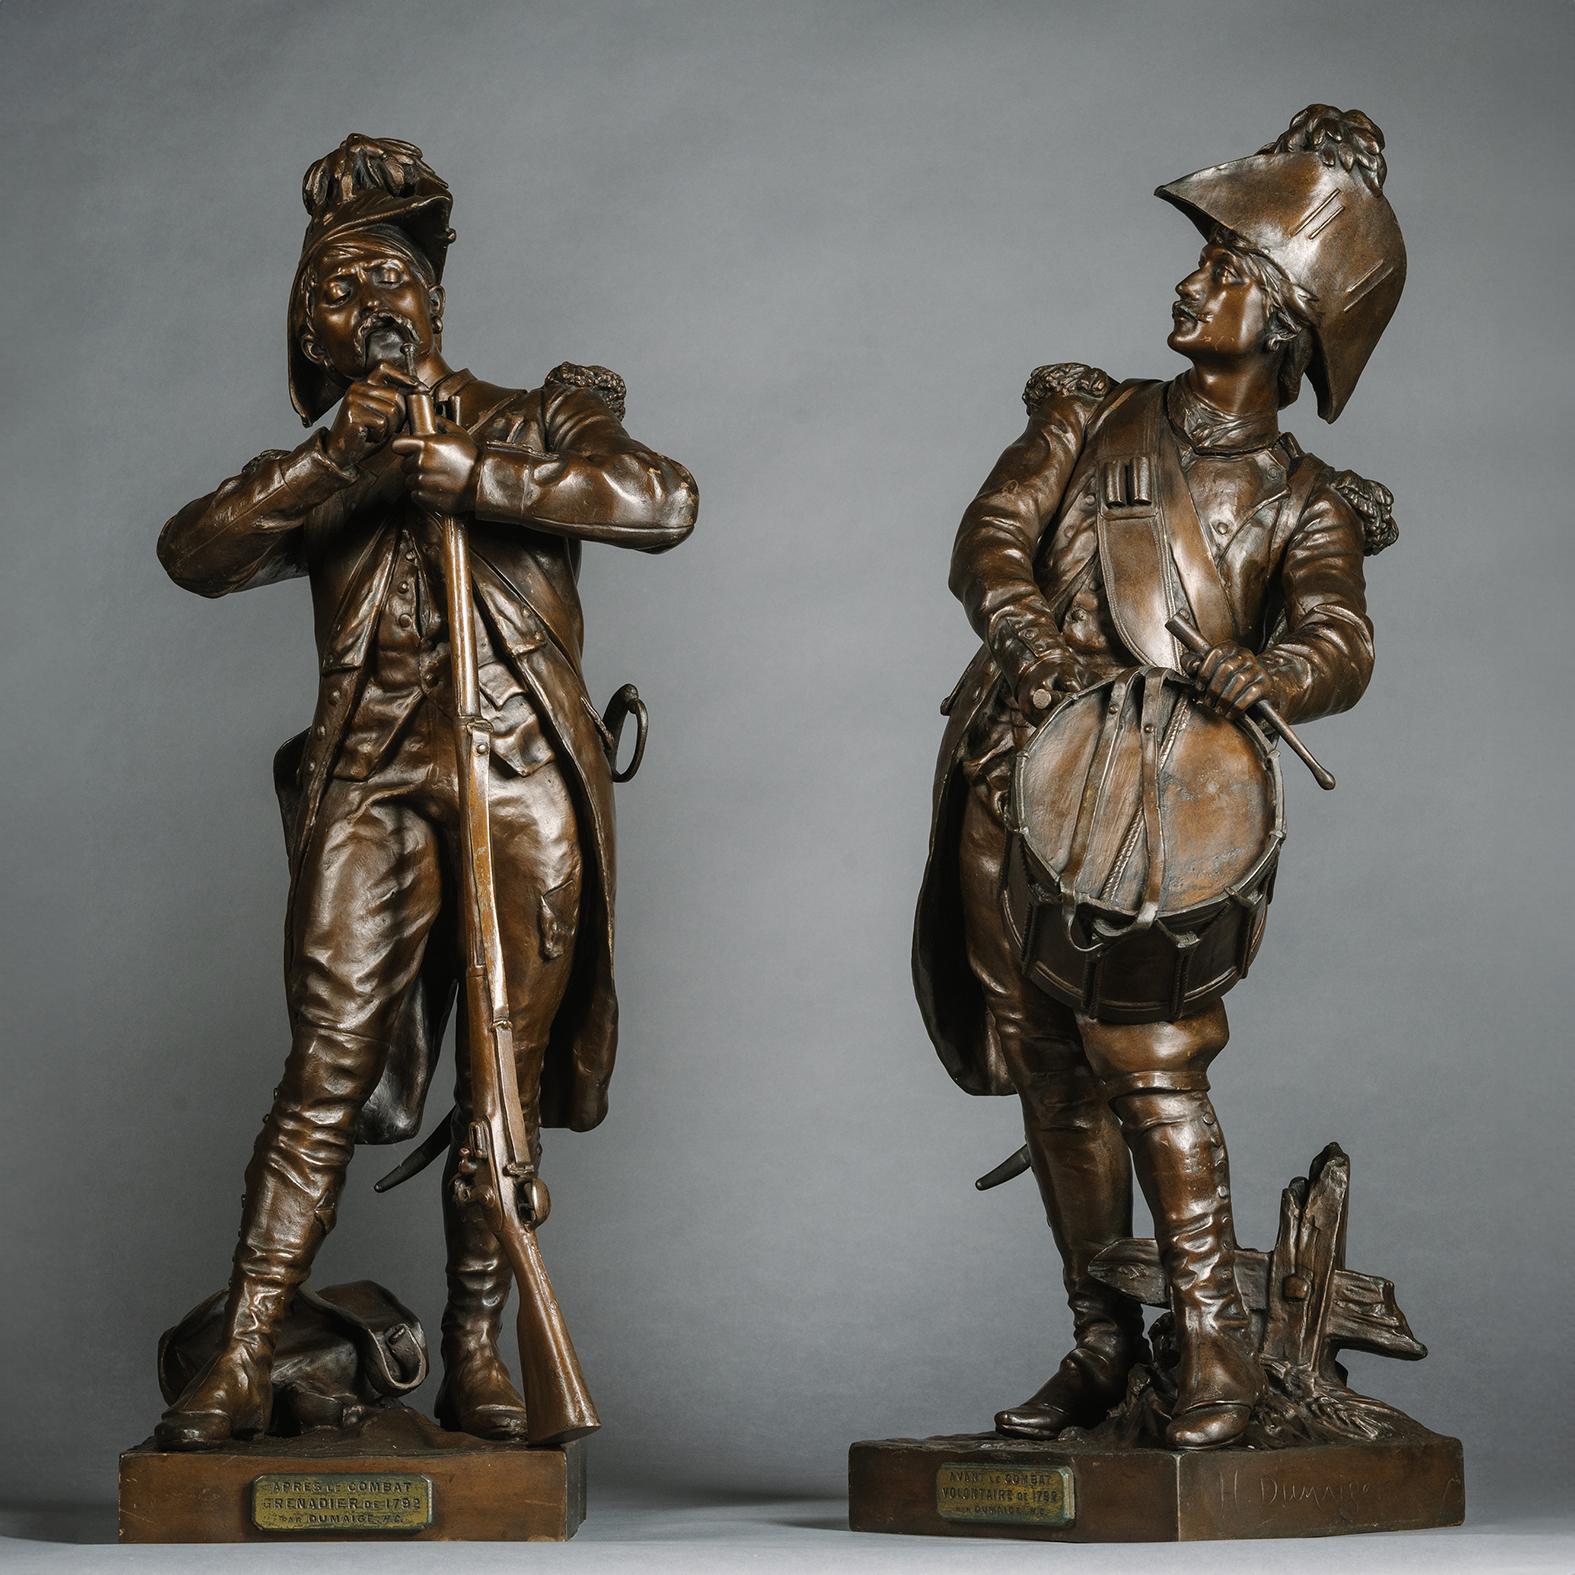 Ein schönes Paar  Bronzefiguren mit den Titeln 'Avant le Combat' und 'Apres le Combat',  Abguss nach den Modellen von Etienne-Henri Dumaige (1830 - 1888). 

Signiert H. Dumaige, mit Titelplaketten.

Die Bronzen stellen zwei verschiedene Momente der